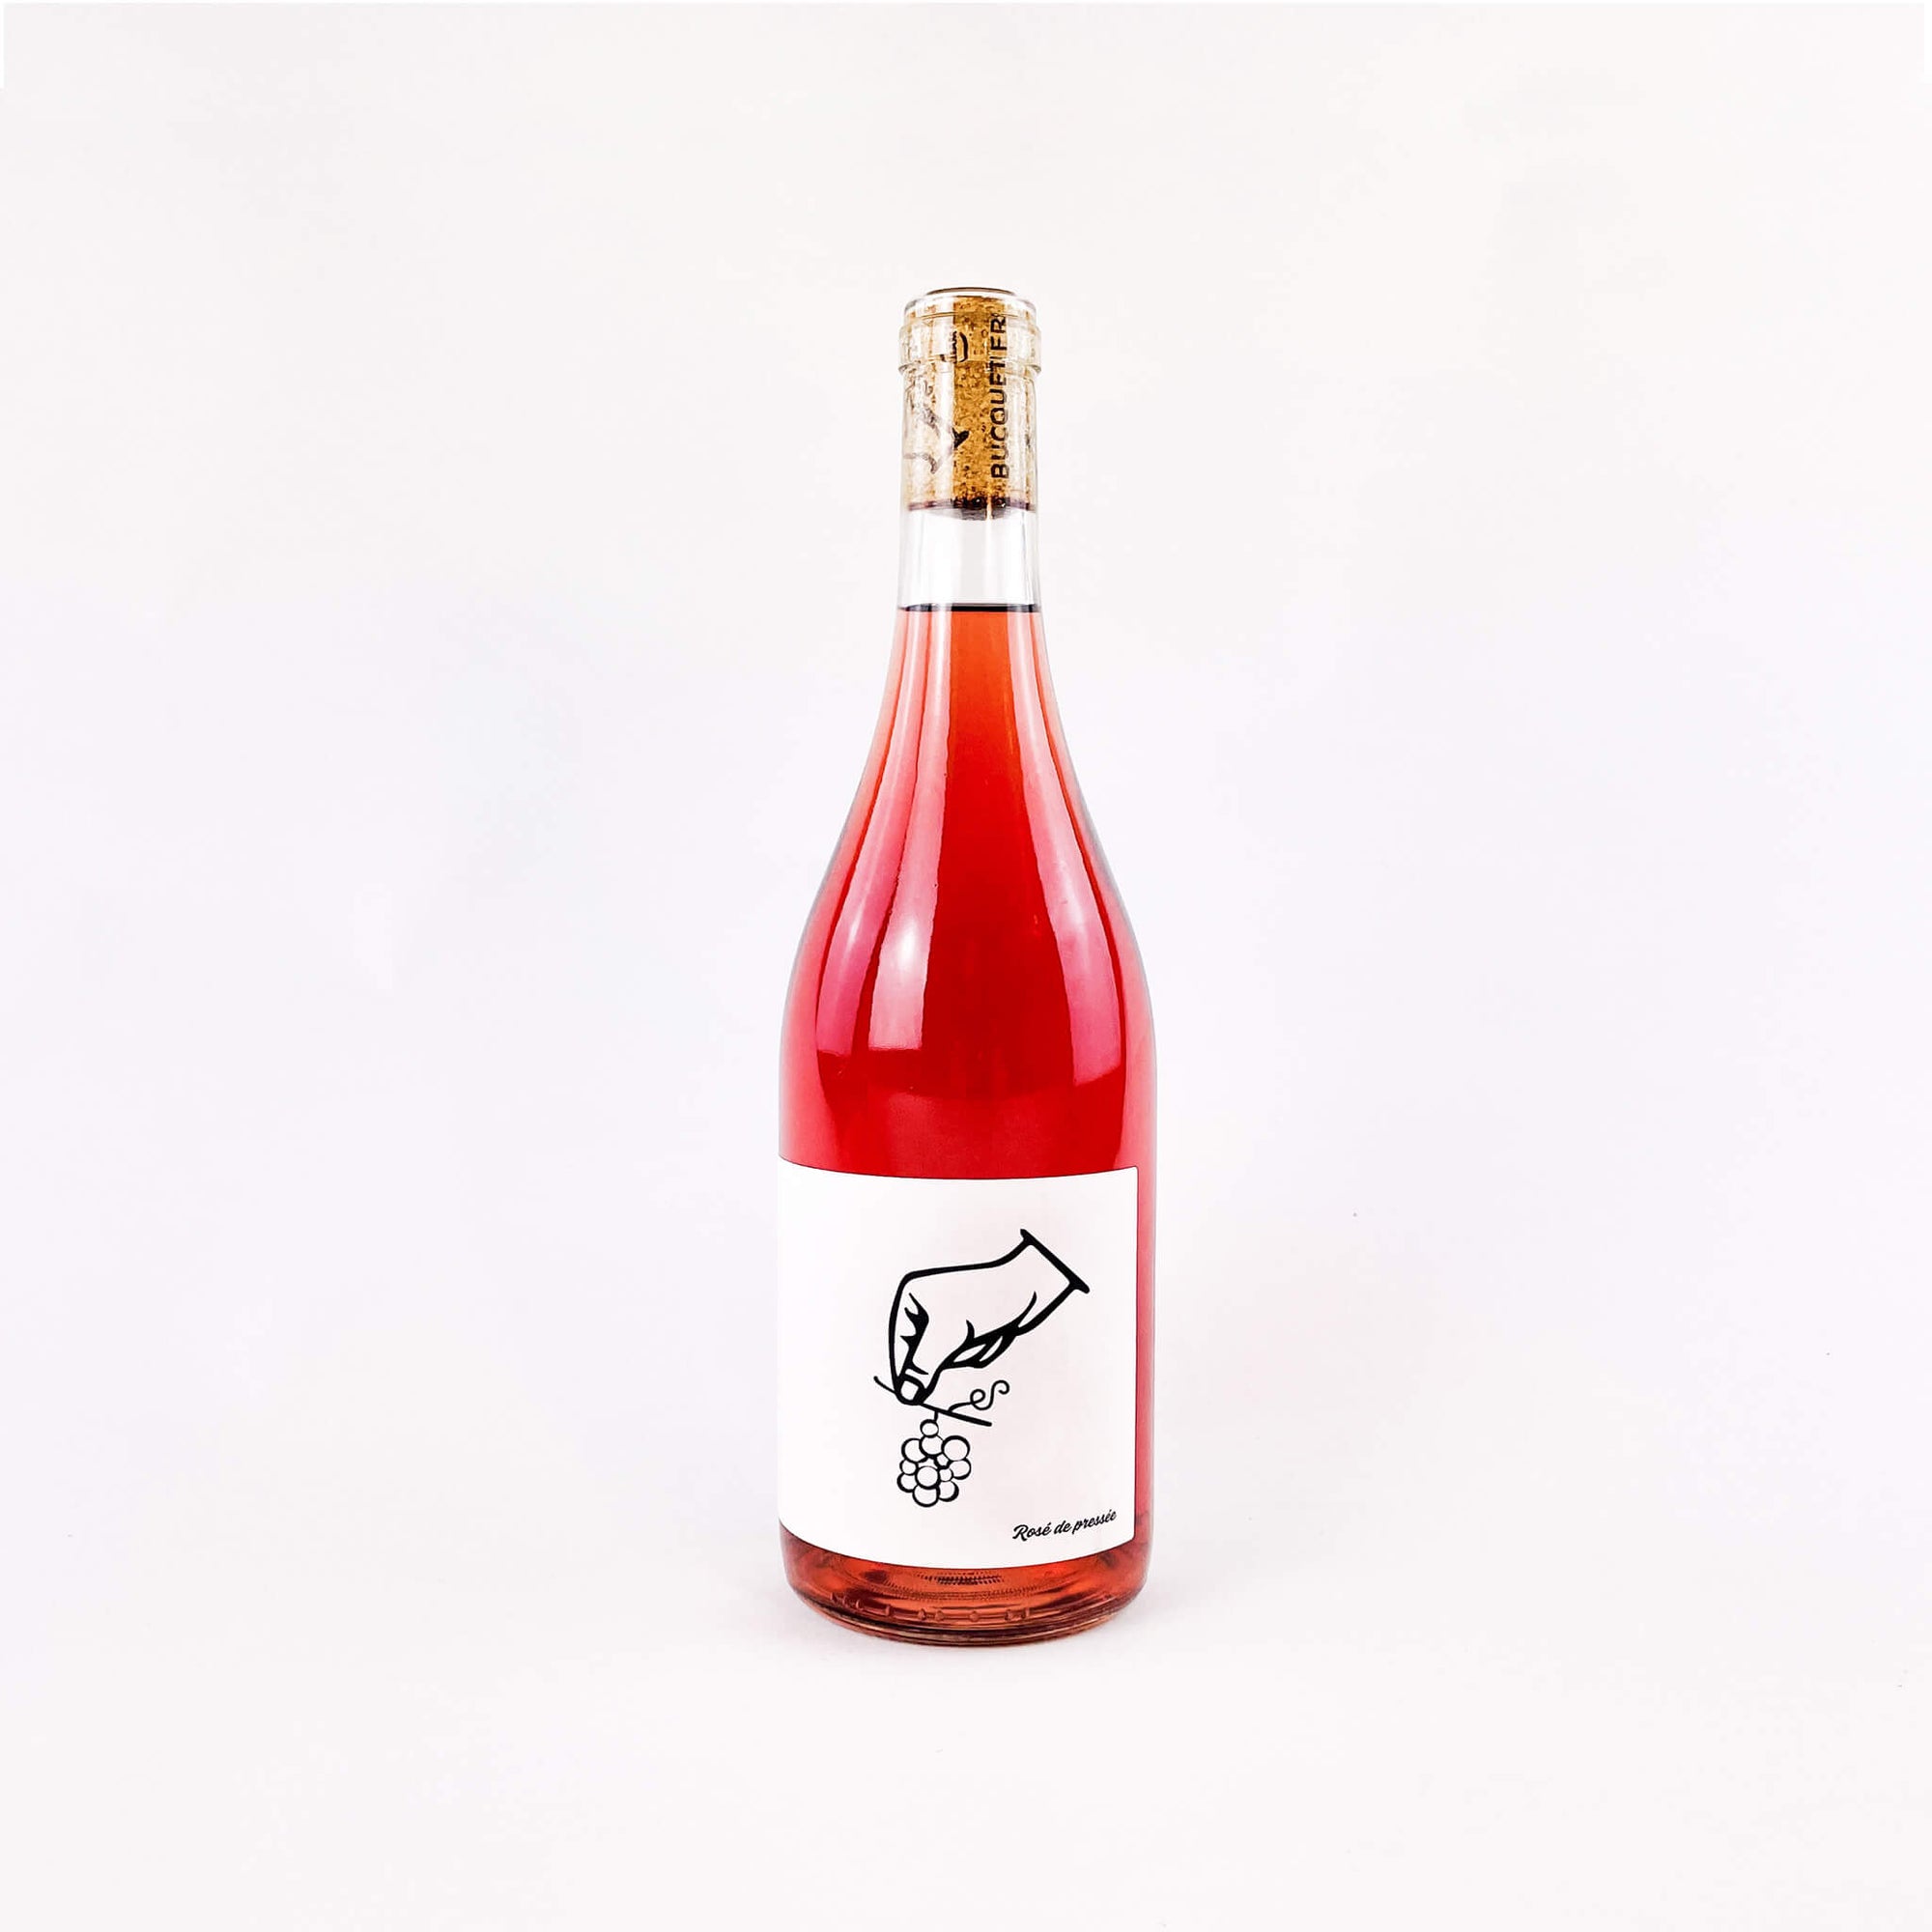 Rosé De Presée Vignoble Bucquet natural wine bottle front view / Naturwein Rosé